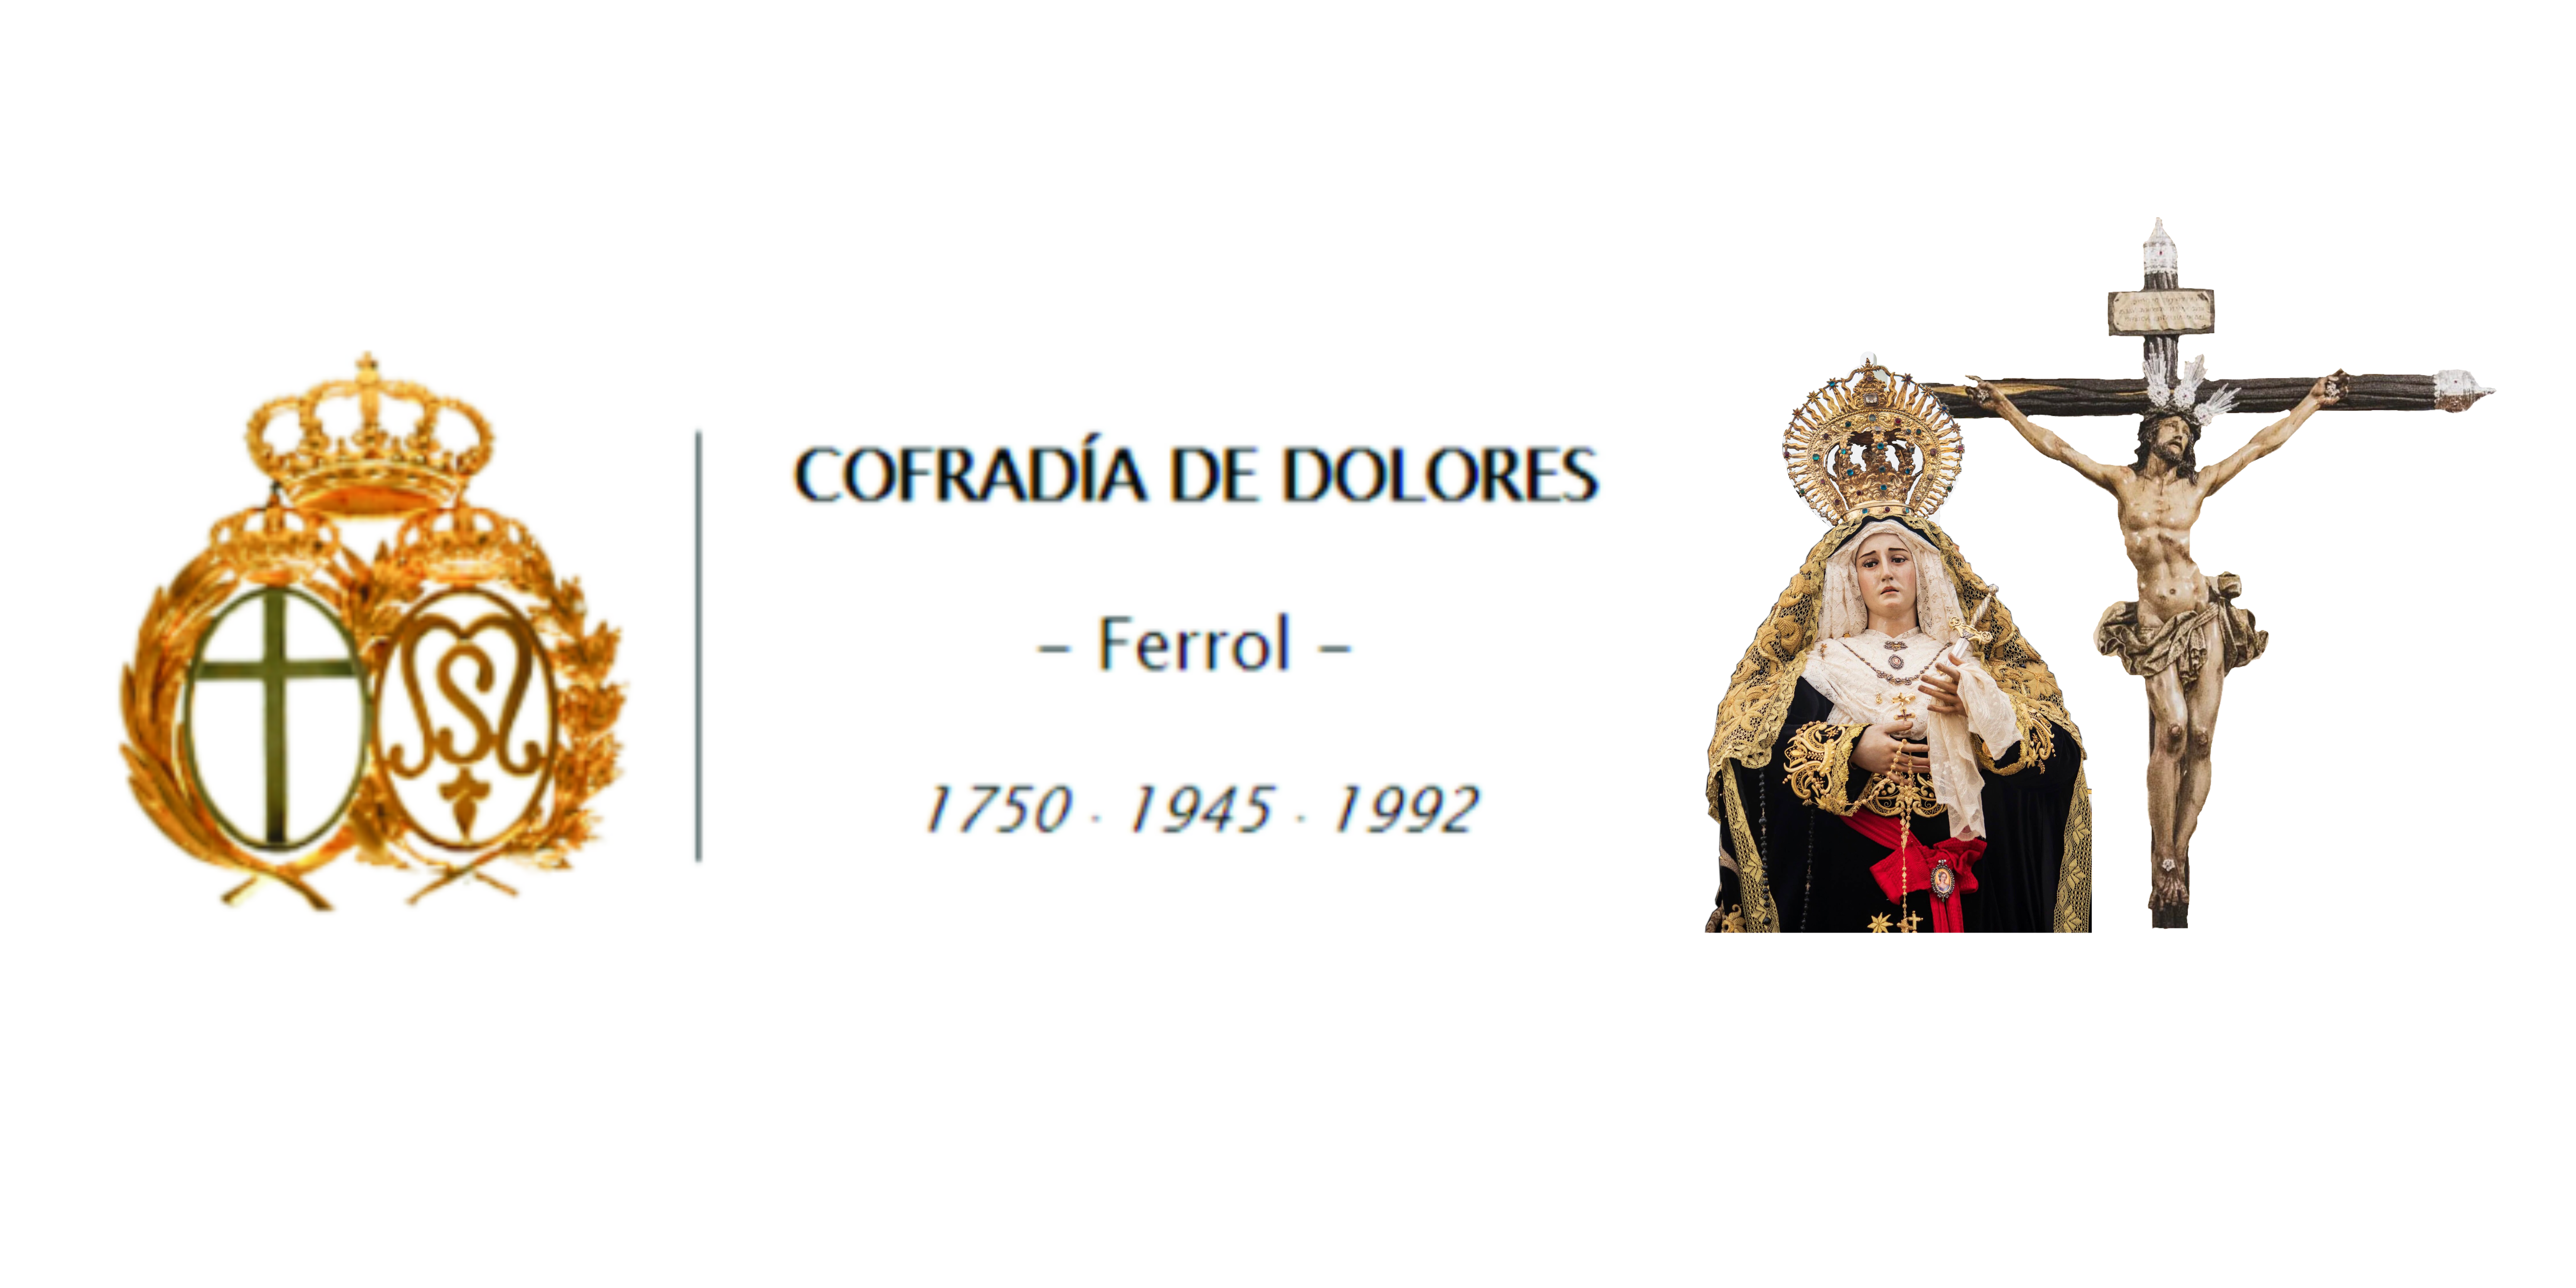 Cofradía de Dolores (Ferrol)